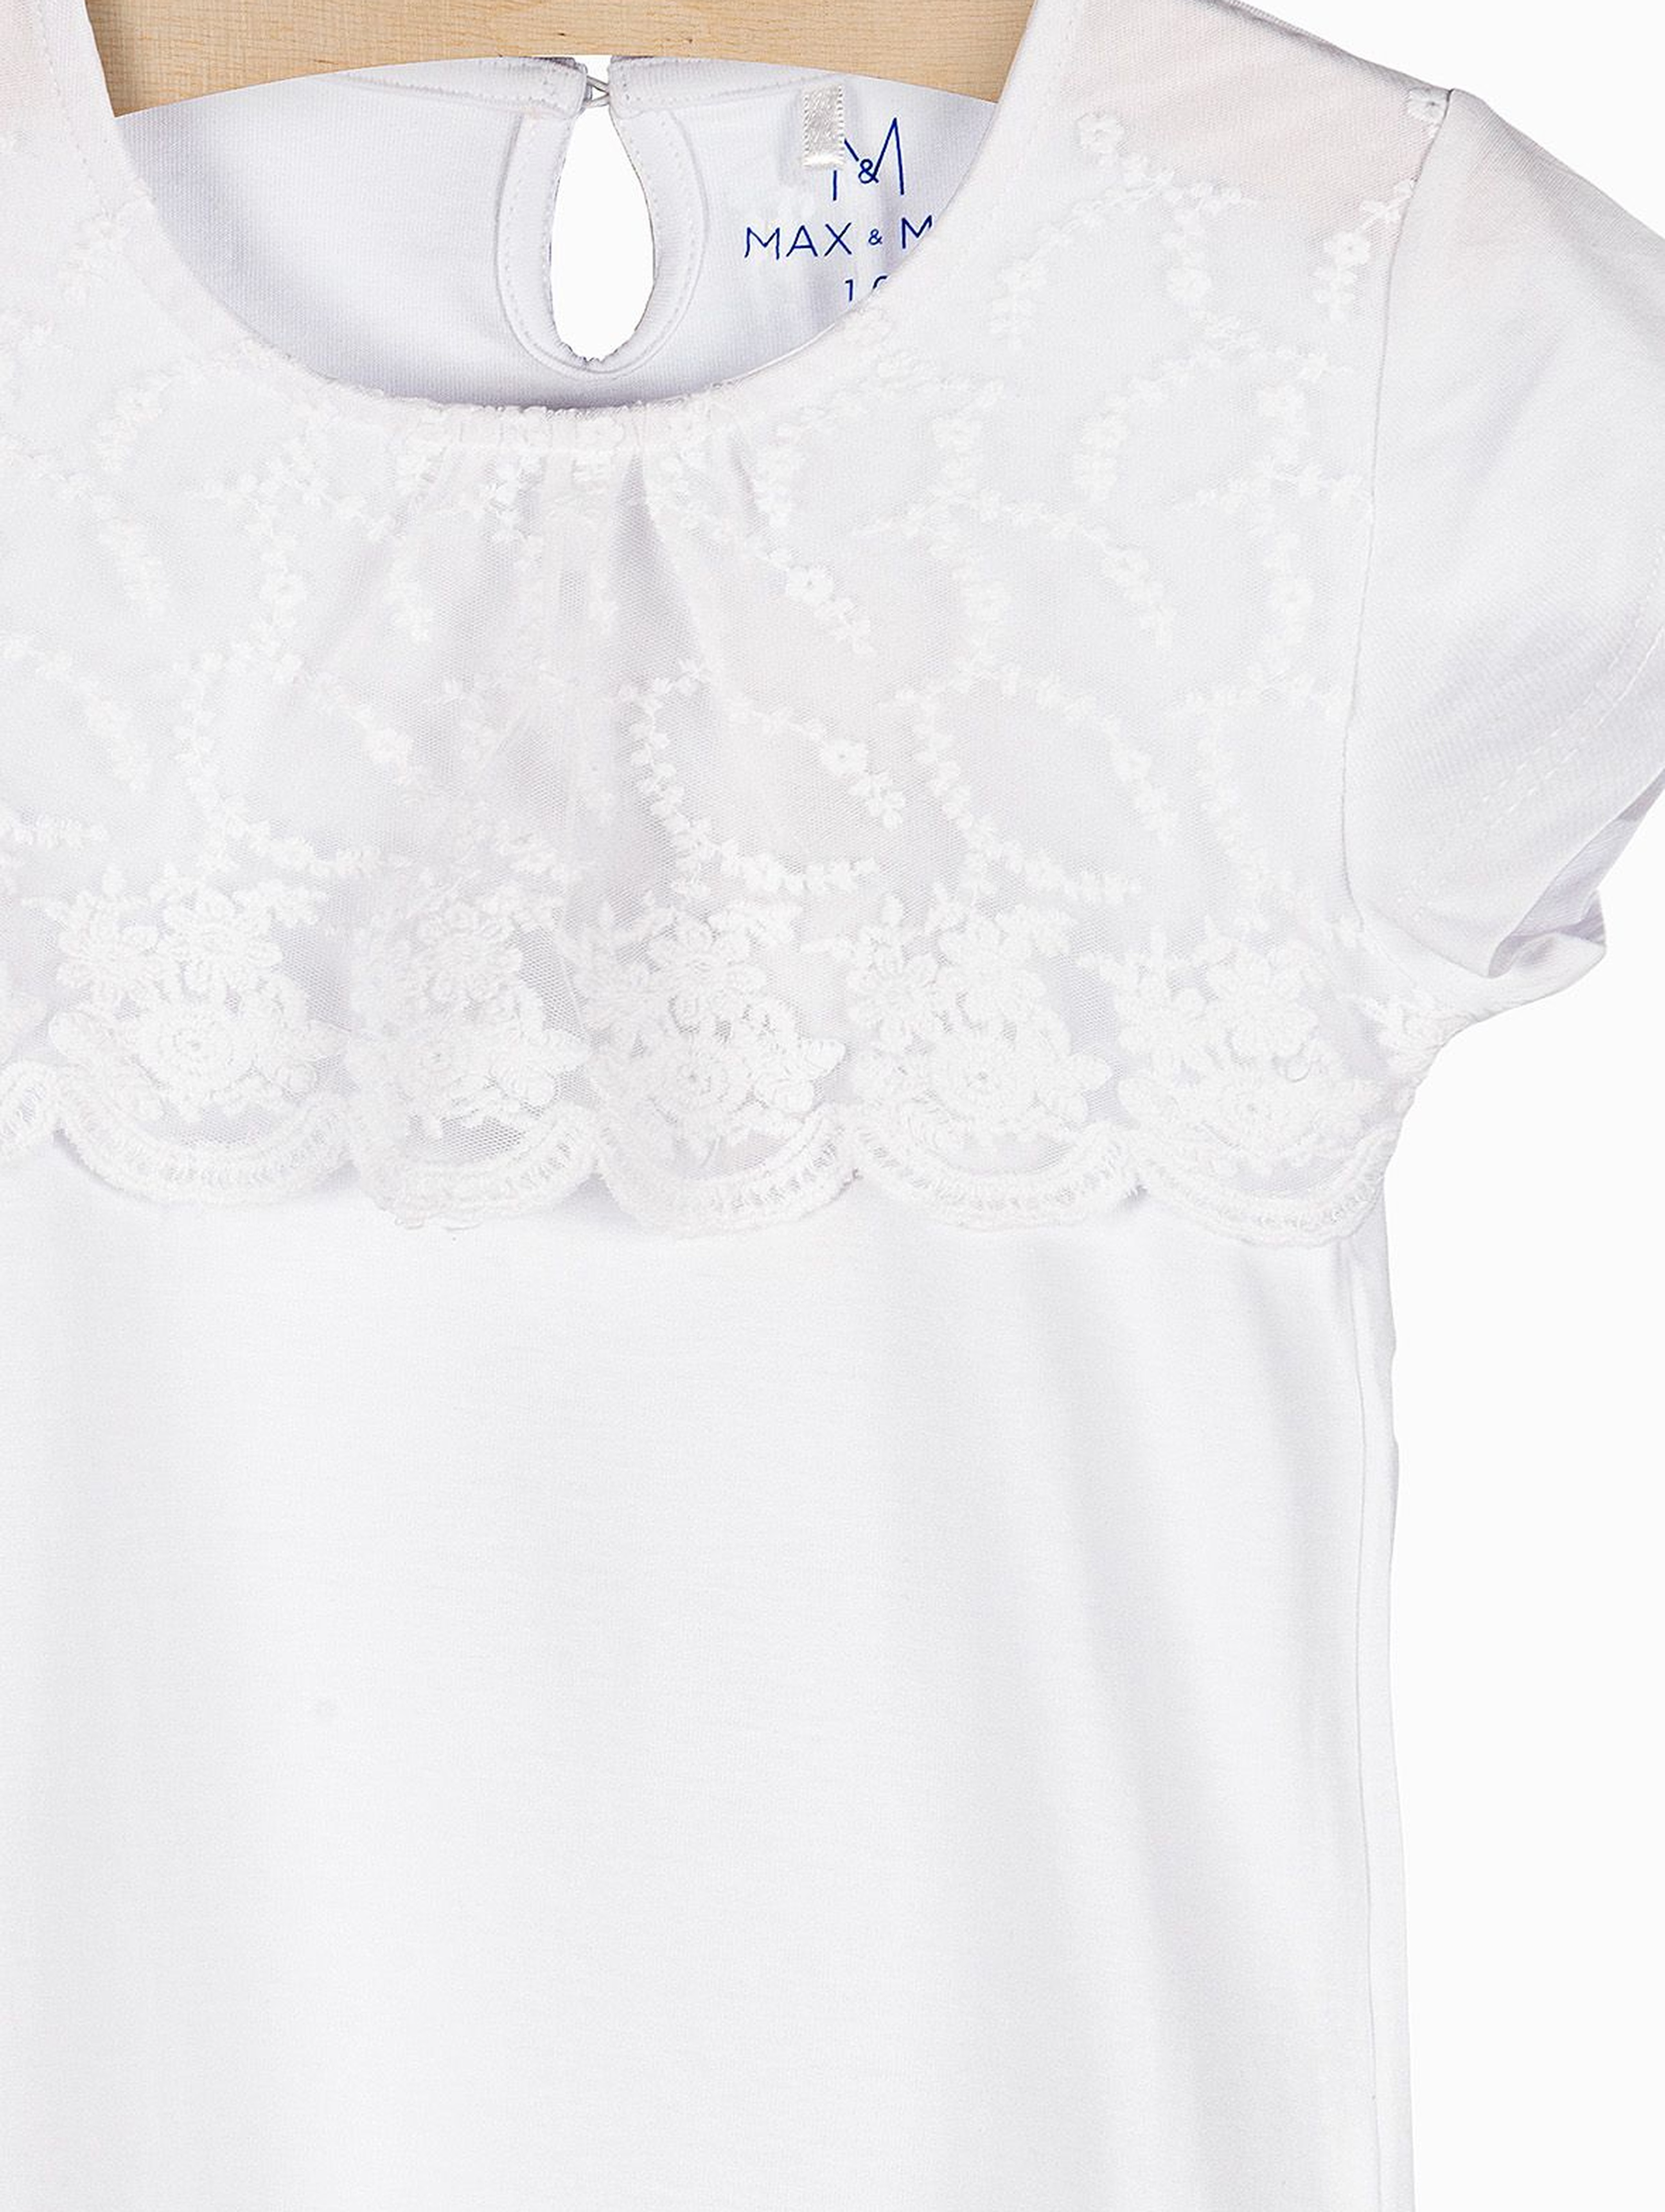 Biały t-shirt dla dziewczynki z ozdobną koronką